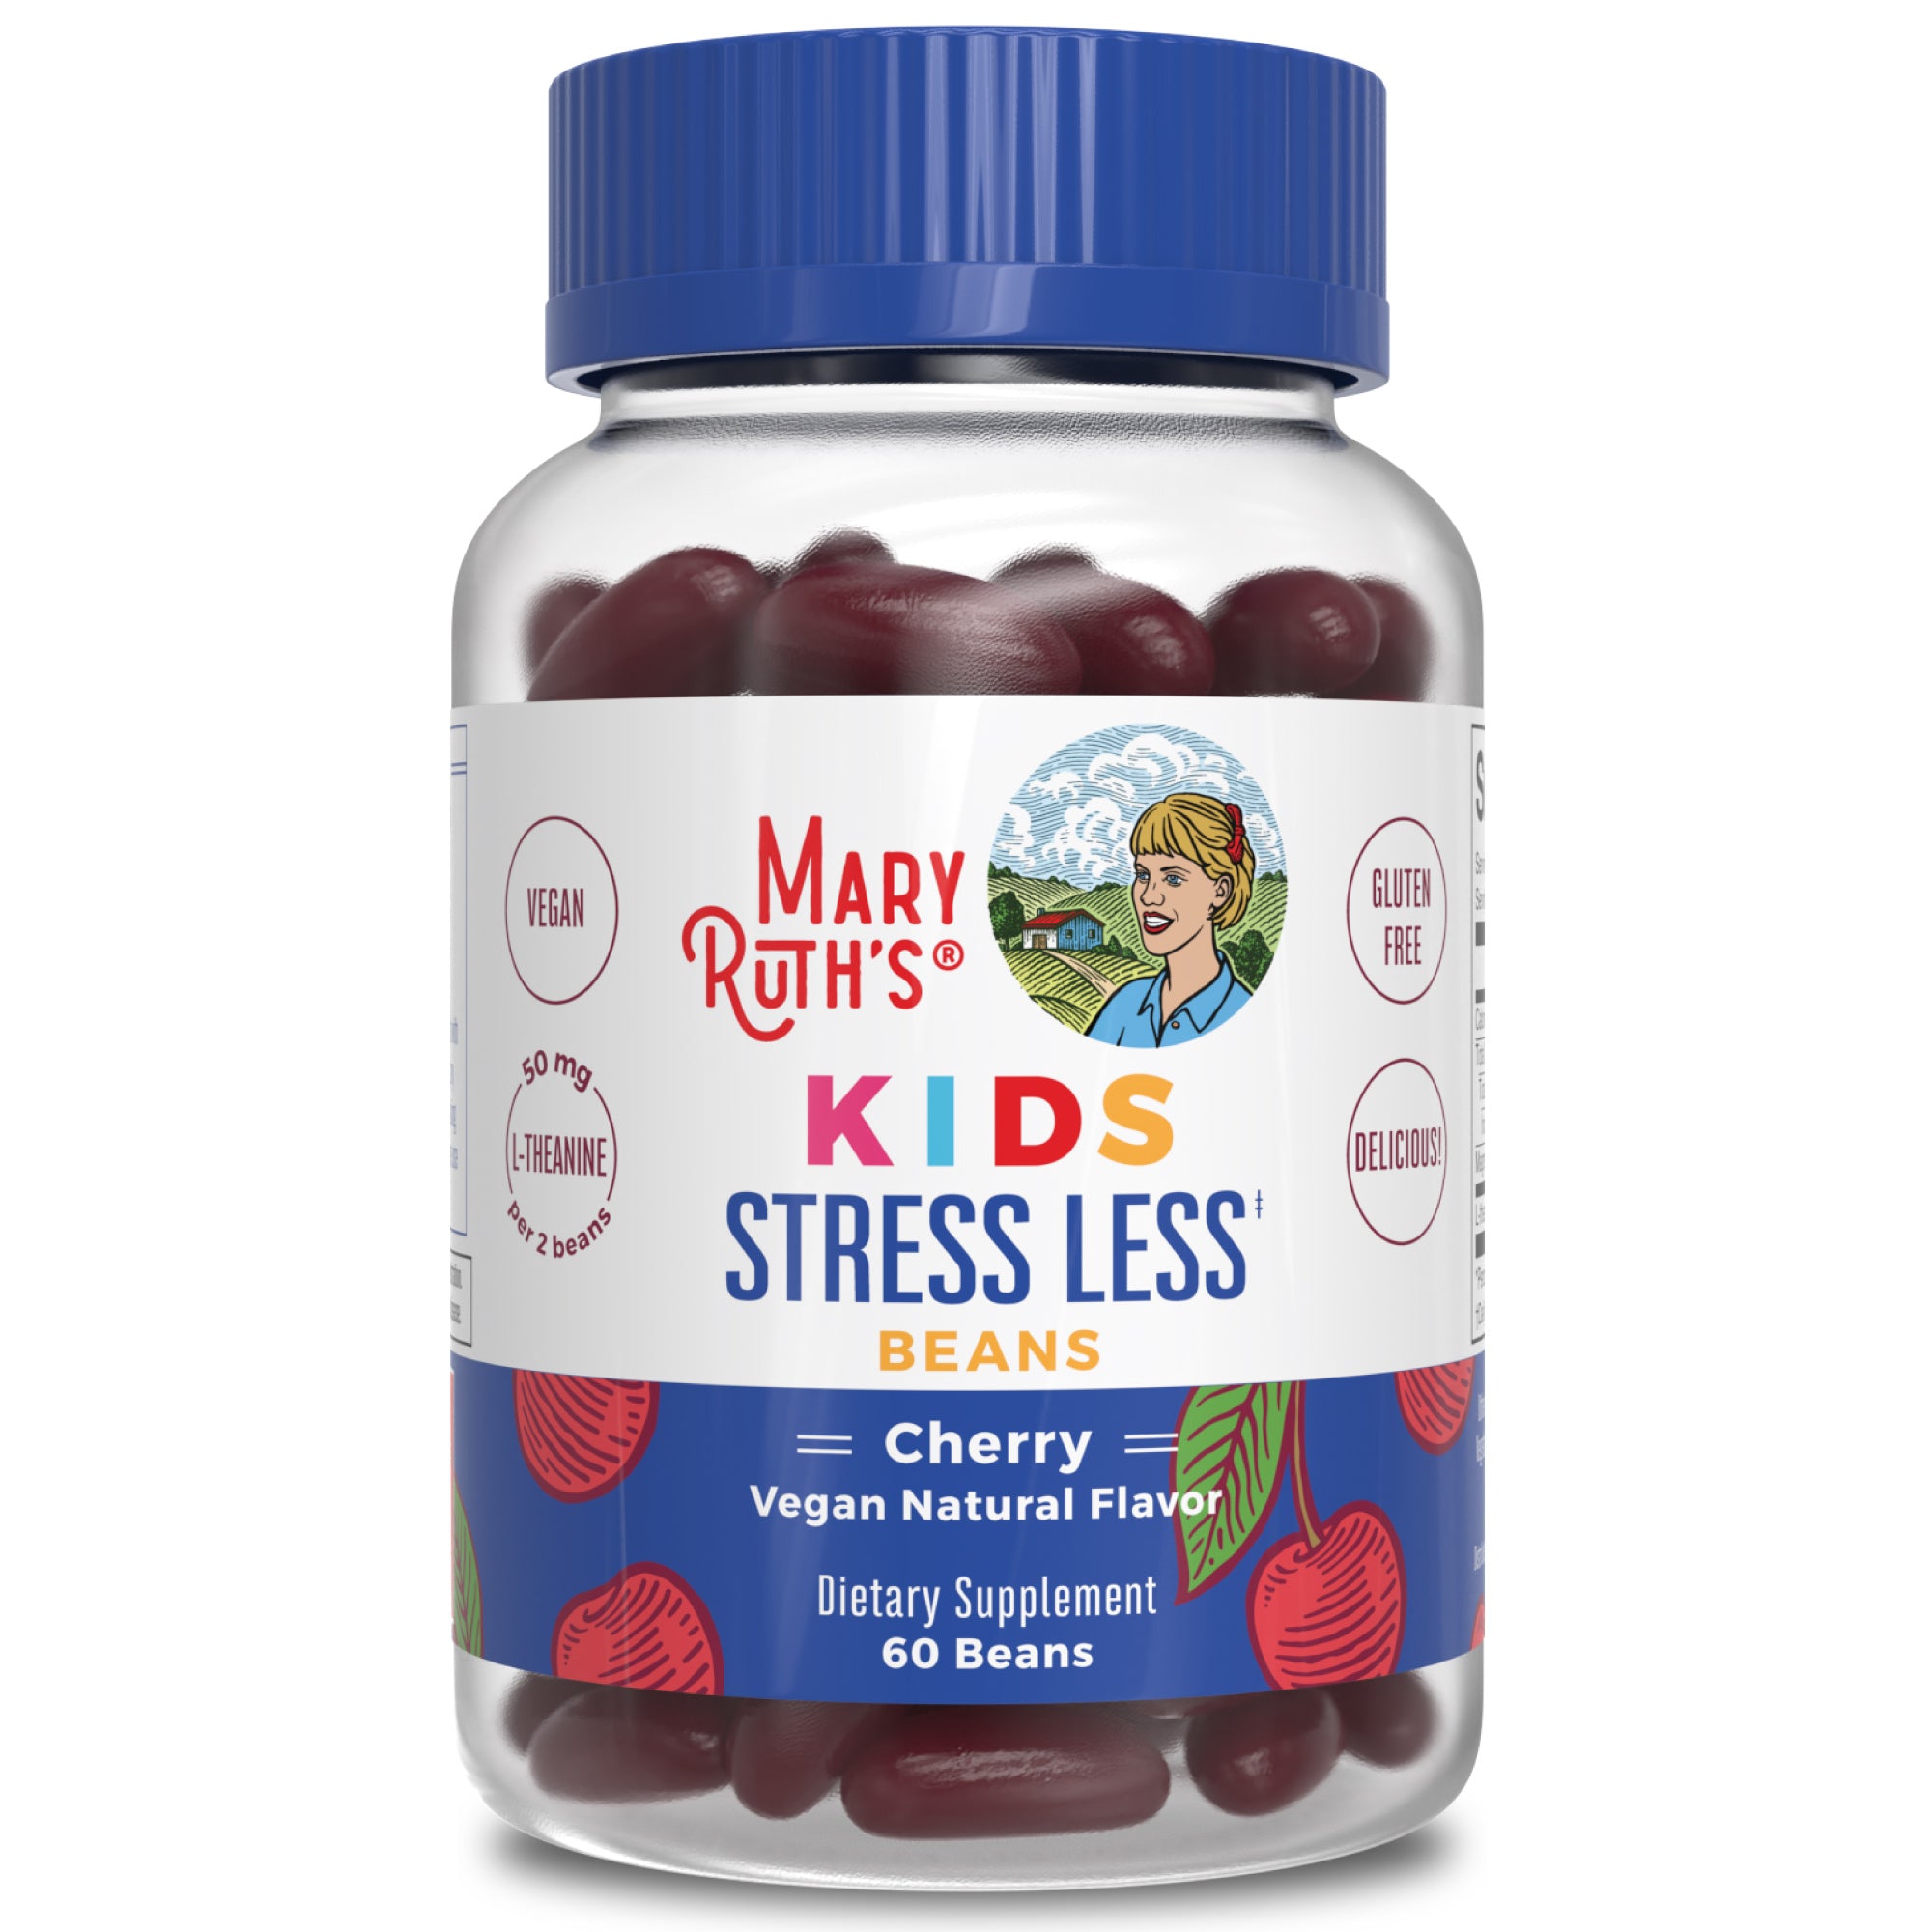 Kids Stress Less Beans